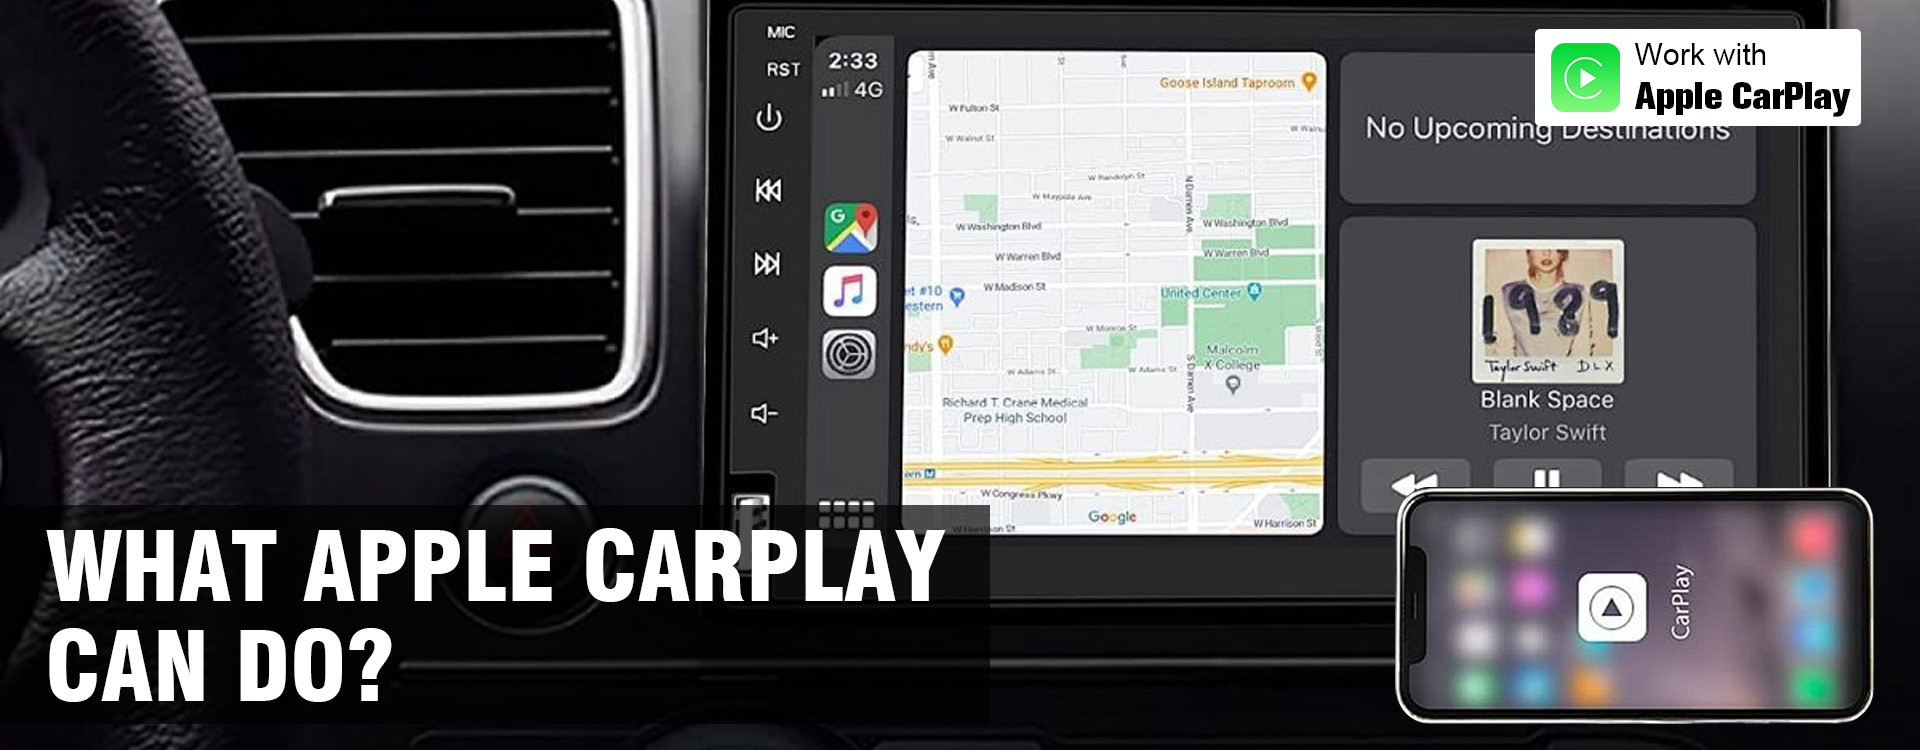 ¿Qué puede hacer Apple Carplay?